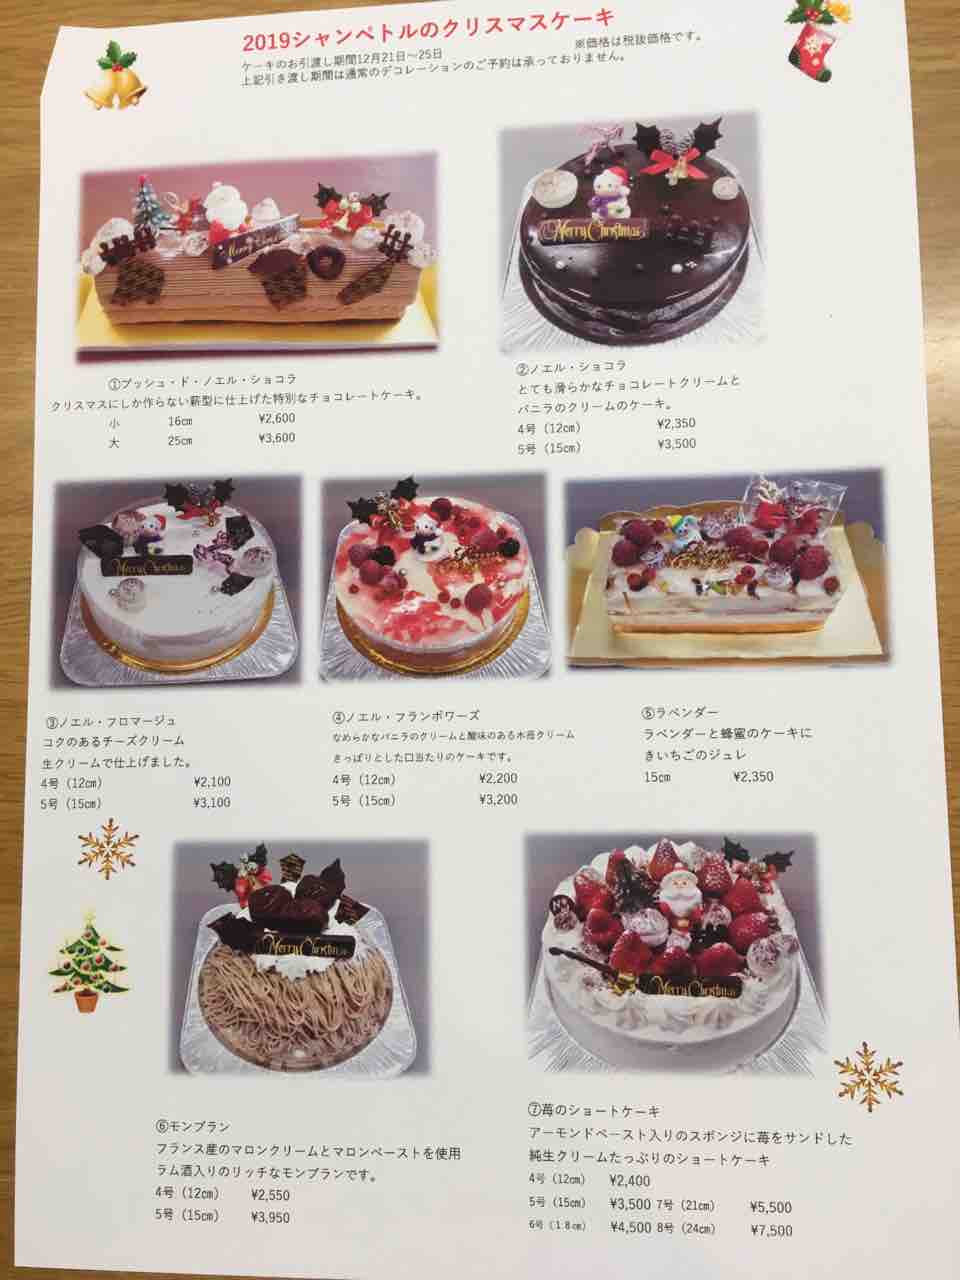 クリスマスケーキ 八ケ岳高原 小淵沢のケーキ屋 シャンペトルのブログ